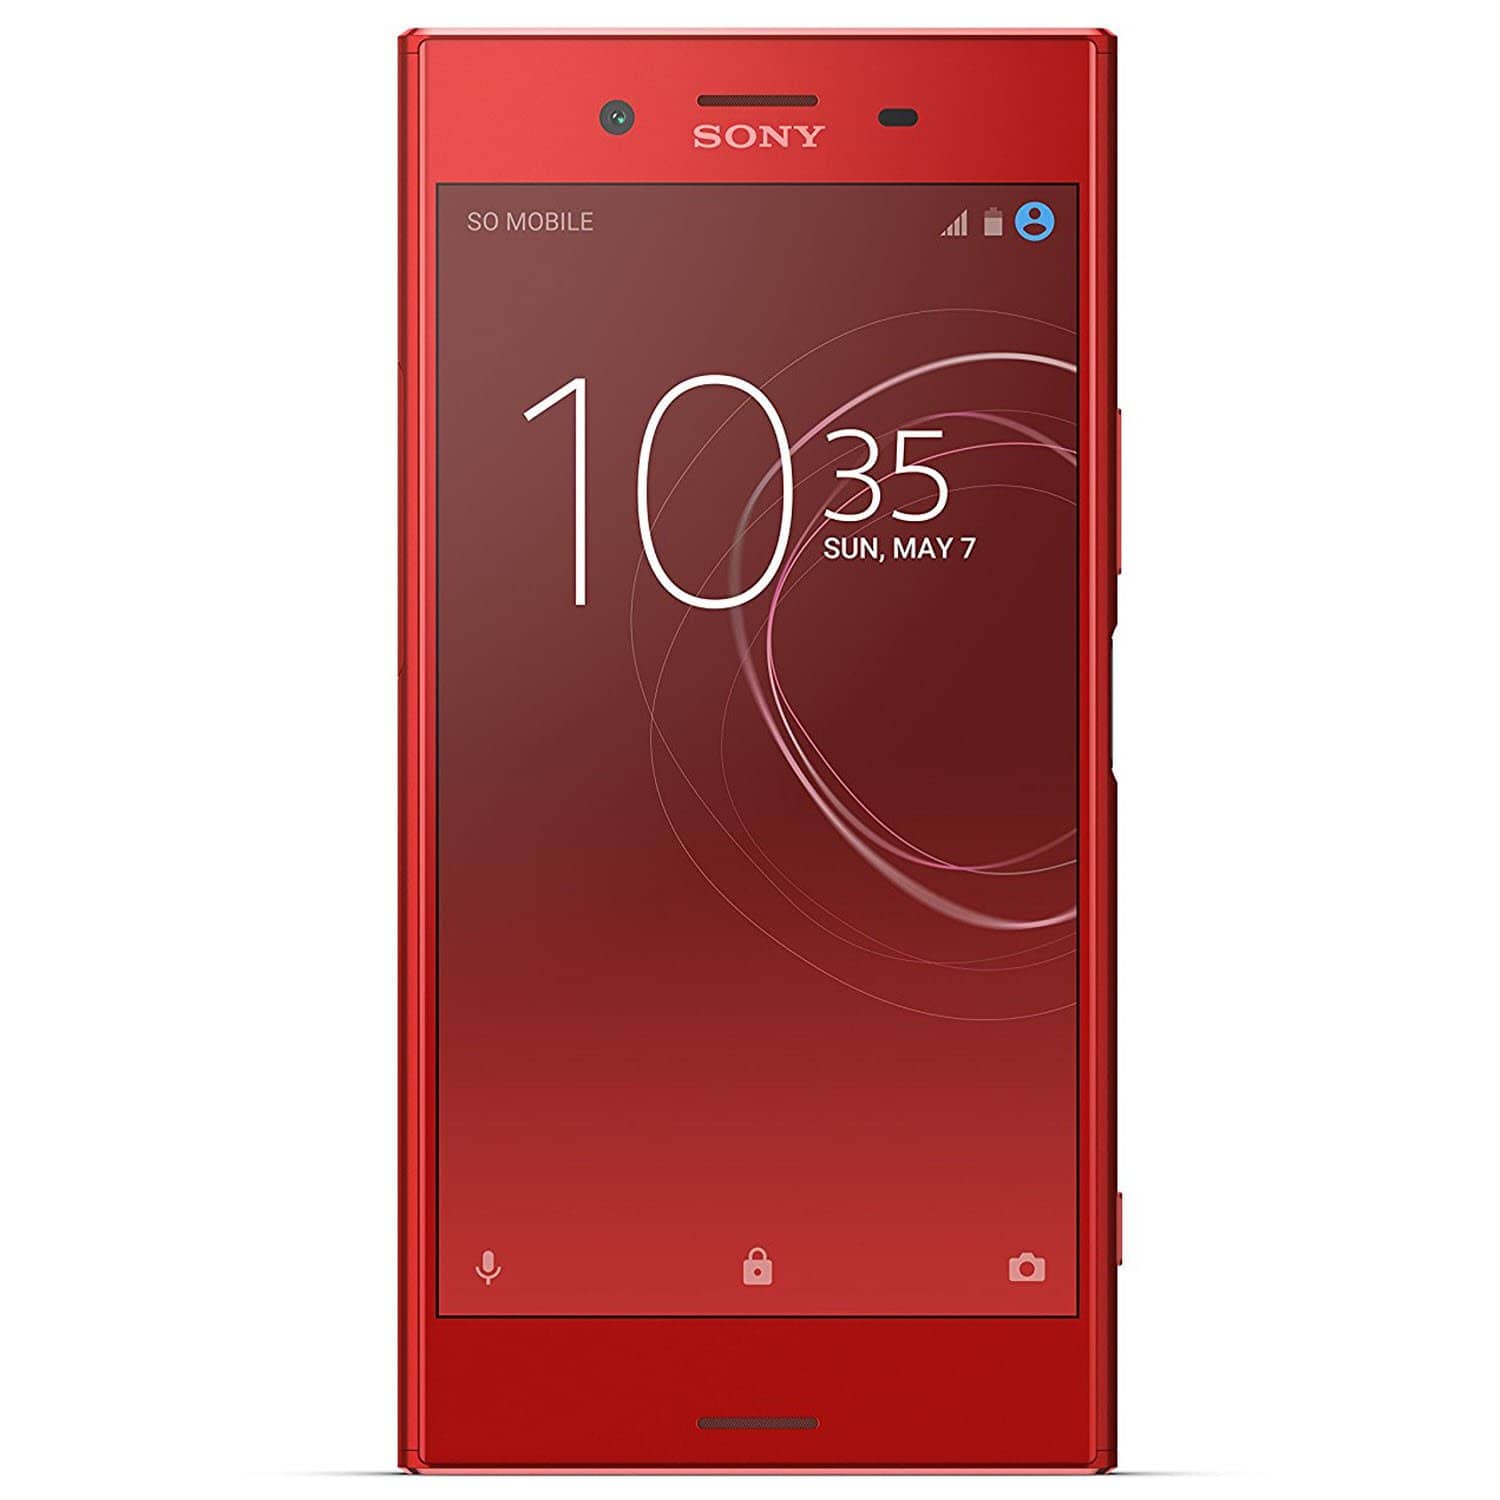 Sony Xperia XZ Premium - Unlocked Smartphone - 5.5